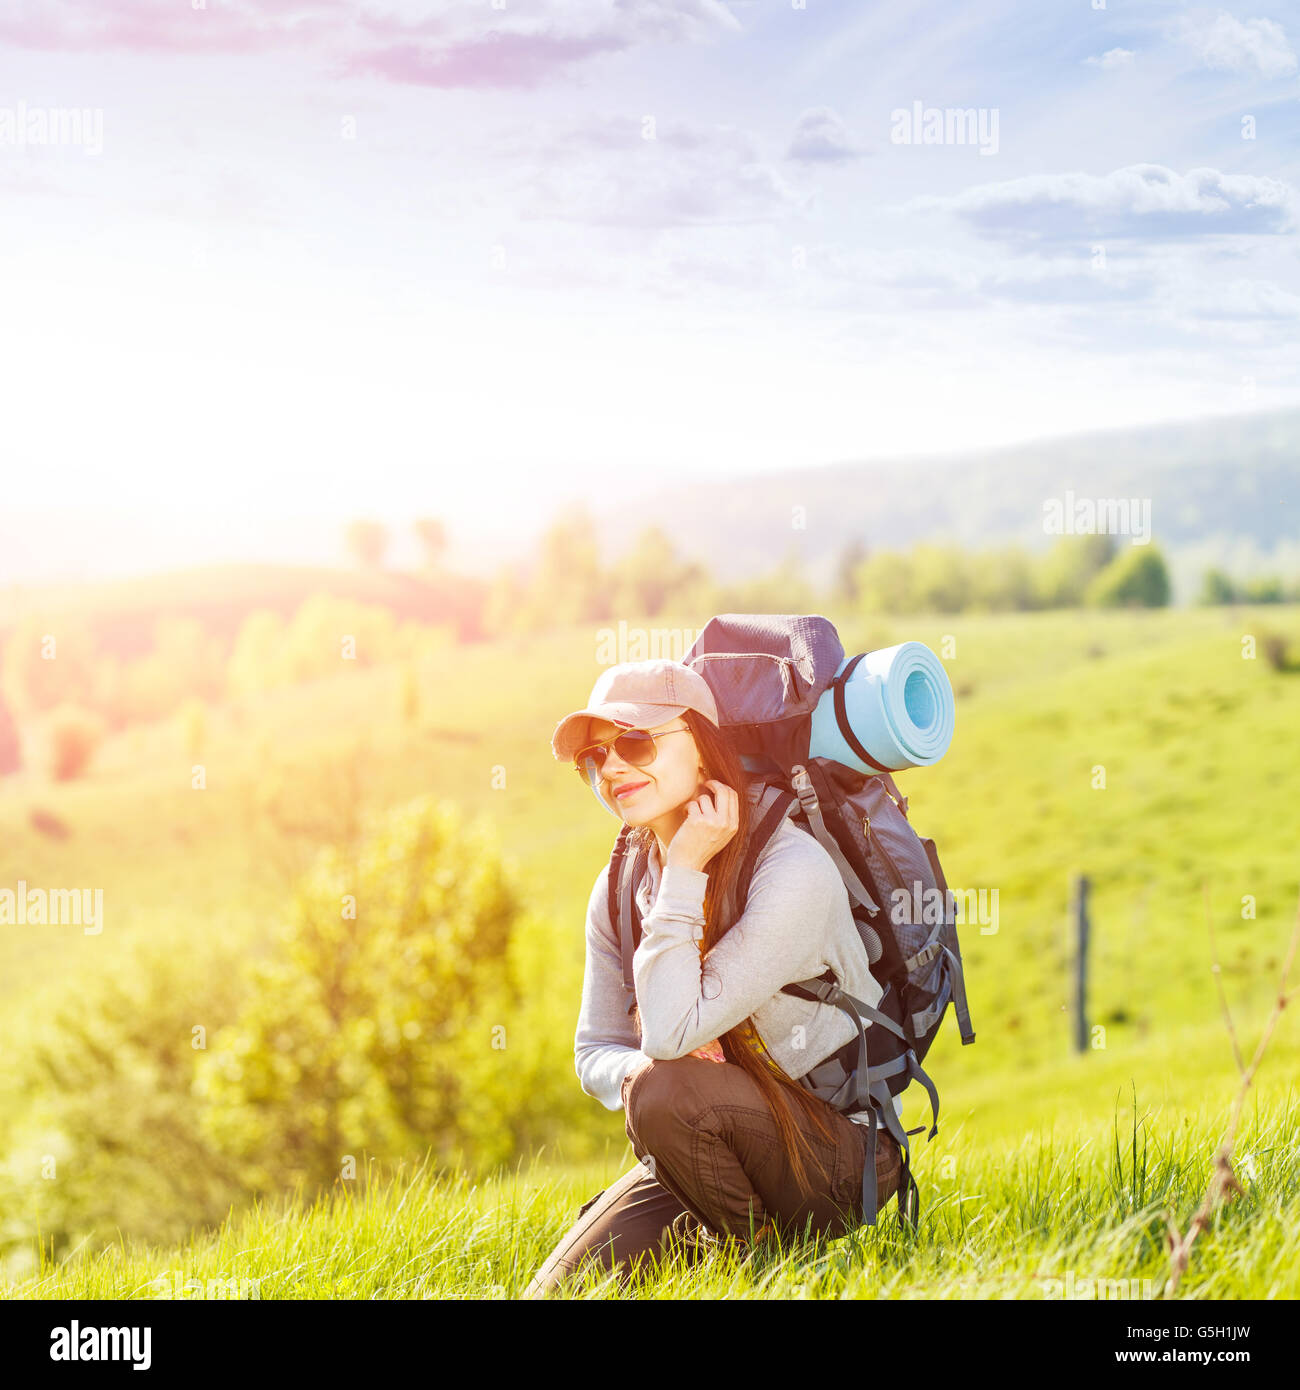 Junge glückliche Frau mit Rucksack auf grünem Hügel im Sonnenaufgang Balken ruht. Schöne Reisen Backpacker Hintergrund mit Kopie spac Stockfoto